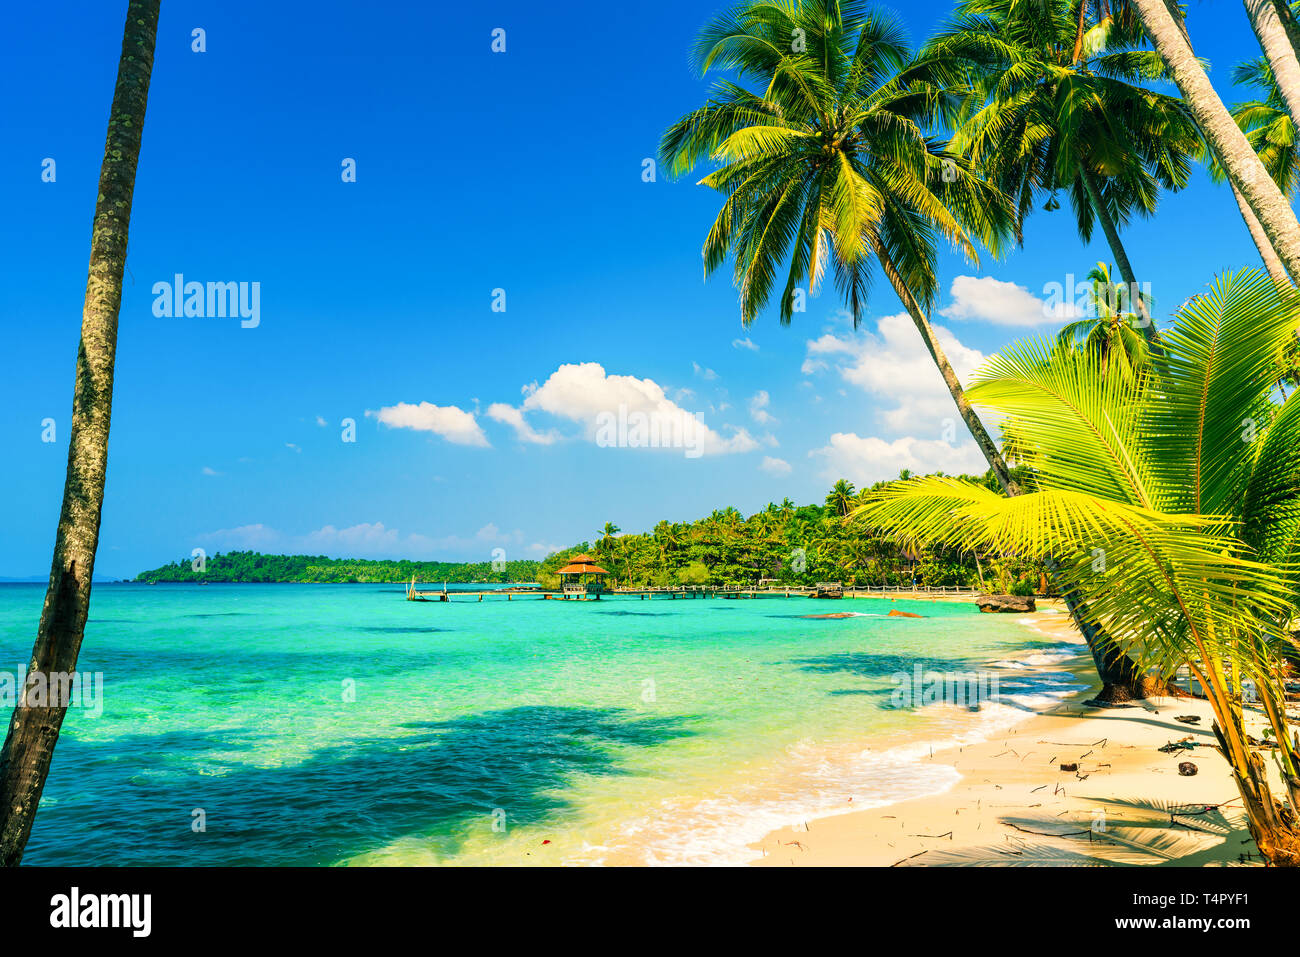 Spiaggia tropicale con un mare limpido e cristallino acqua, scenario Palm tree su sfondo incredibile laguna e cielo blu. Asia Thailandia Foto Stock